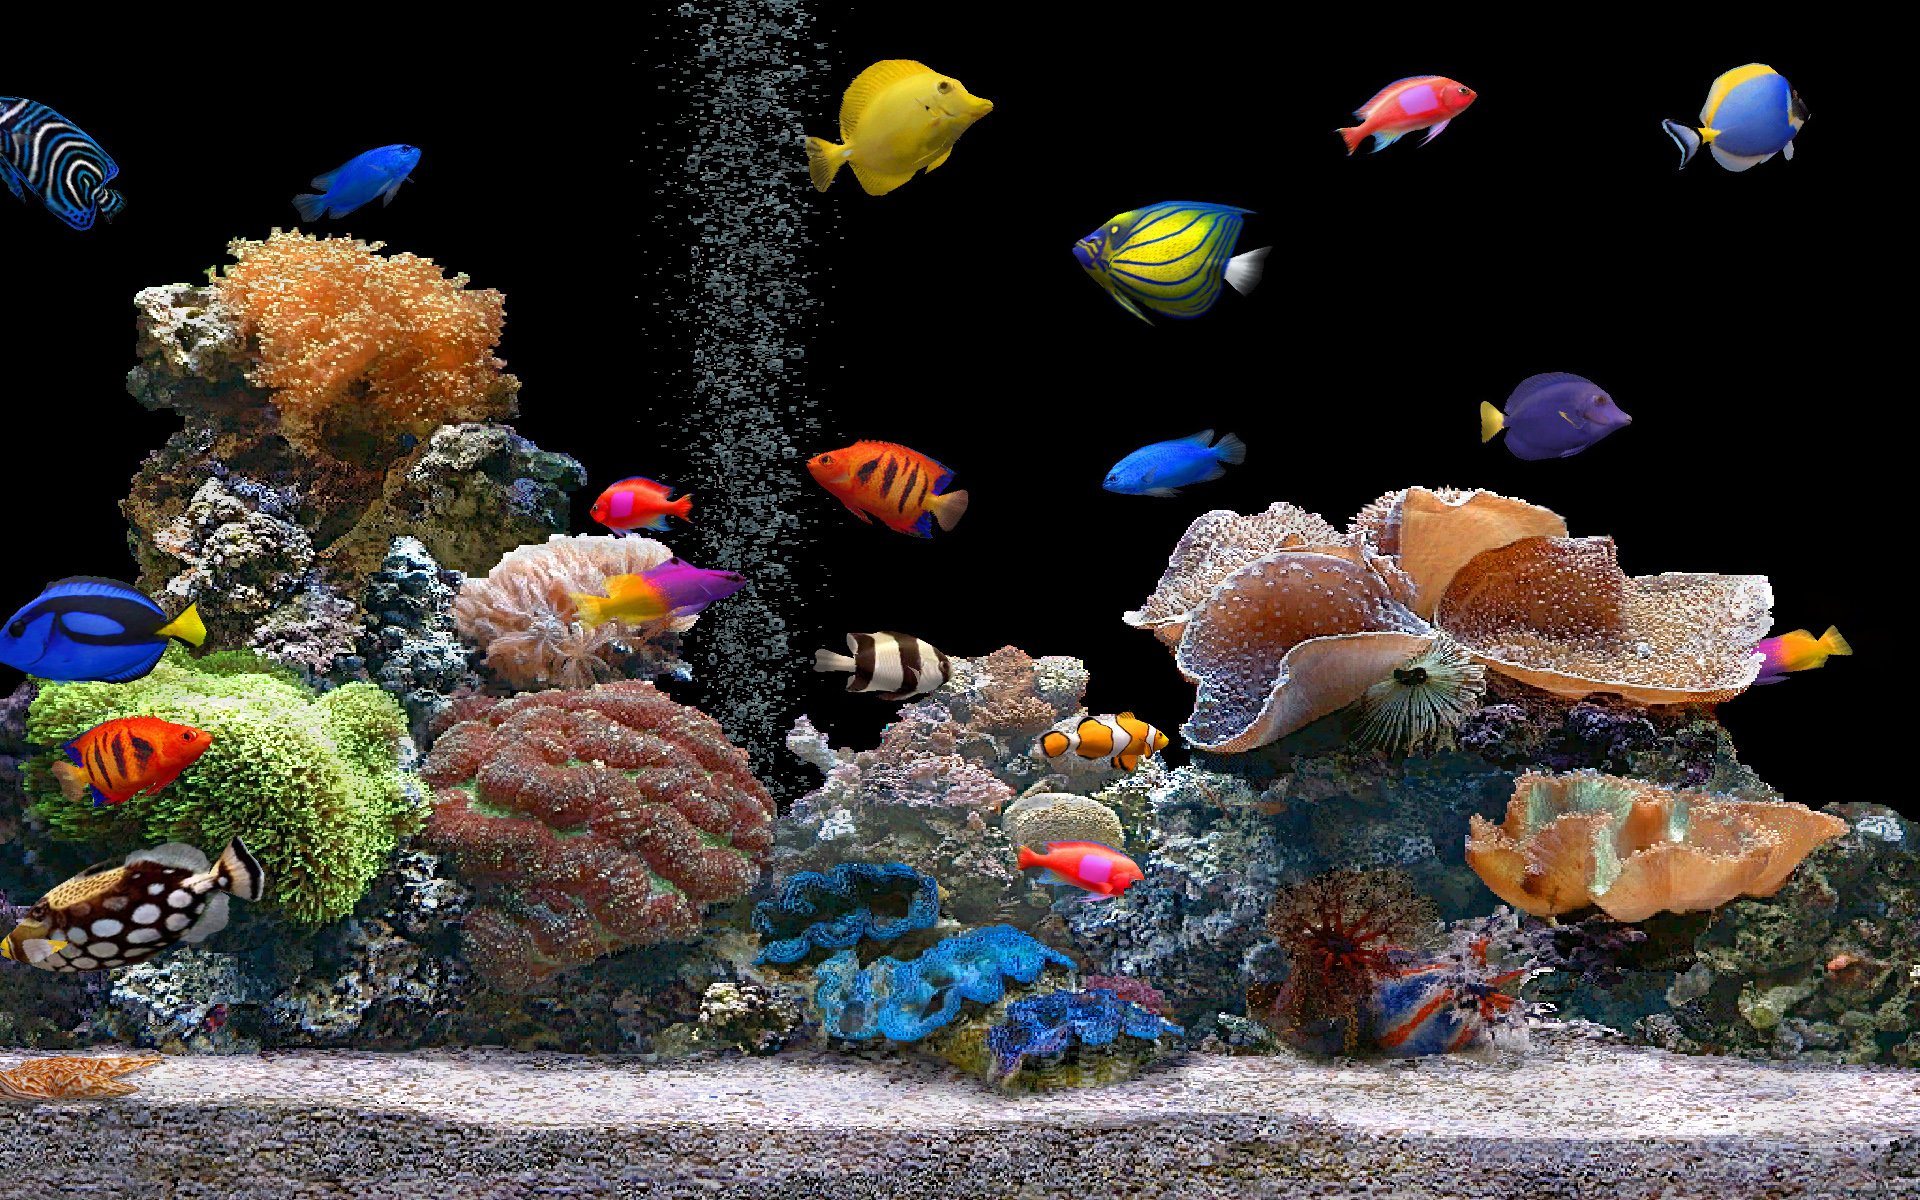 Hình nền cá (Fish wallpaper): Bạn yêu thích hình ảnh cá vui mắt và đầy màu sắc? Hãy xem ngay những hình nền cá đẹp mắt trên trang web của chúng tôi! Chúng tôi tổng hợp những hình ảnh cá đa dạng và sinh động, sẽ làm bạn cảm thấy thư thái và tự hào khi sử dụng những hình nền này.